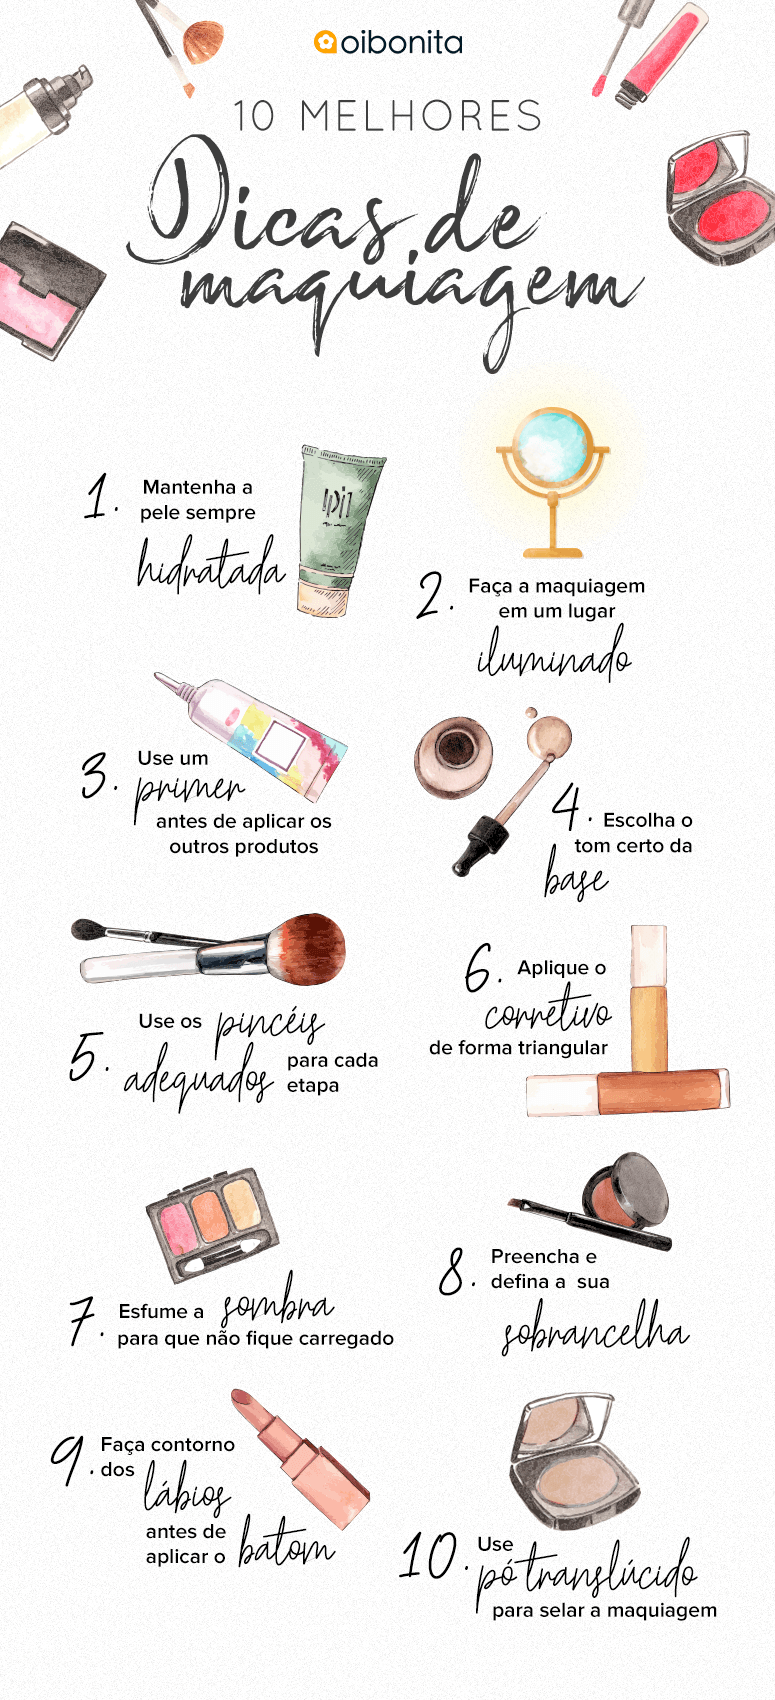 4 dicas sobre como fazer maquiagem simples